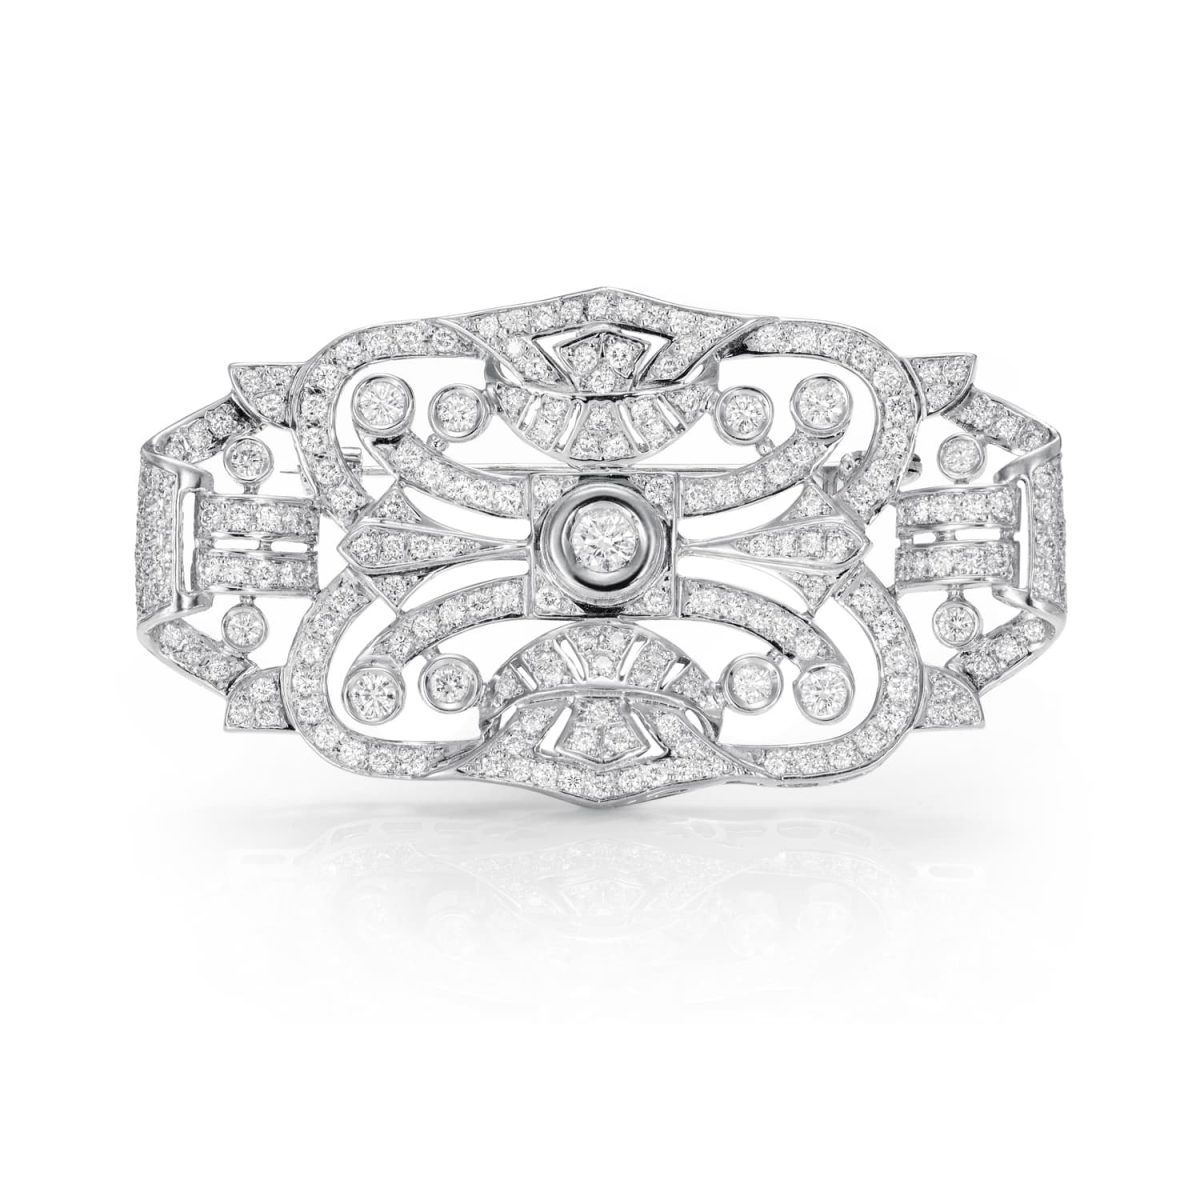 Broche Unique Broche de estilo Art Decó de oro blanco de 18K adornado con 6,80ct de diamantes talla brillante.